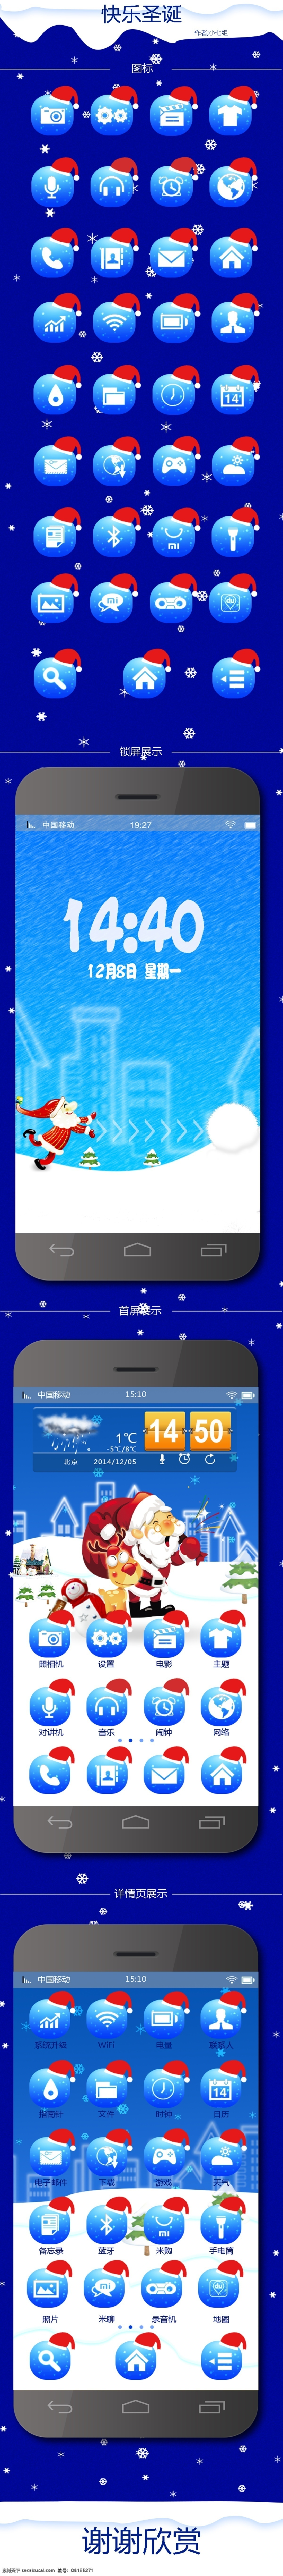 圣诞 手机 主题 ui图标 科技蓝 快乐圣诞 蓝色 圣诞老人 圣诞帽 时间轴 原创设计 其他原创设计